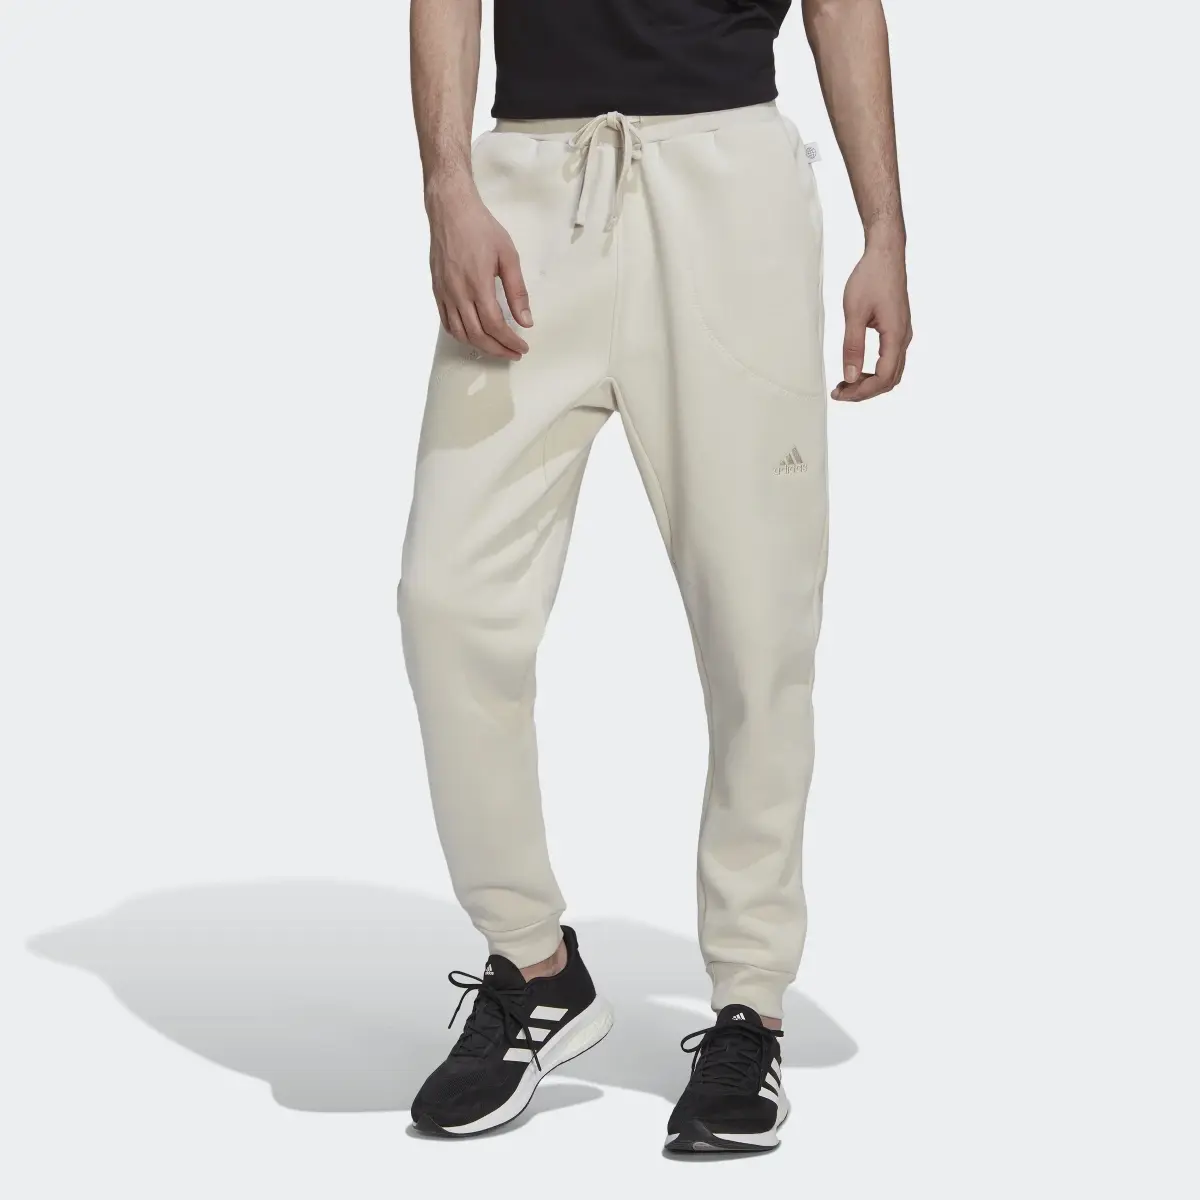 Adidas Studio Lounge Fleece Pants. 1